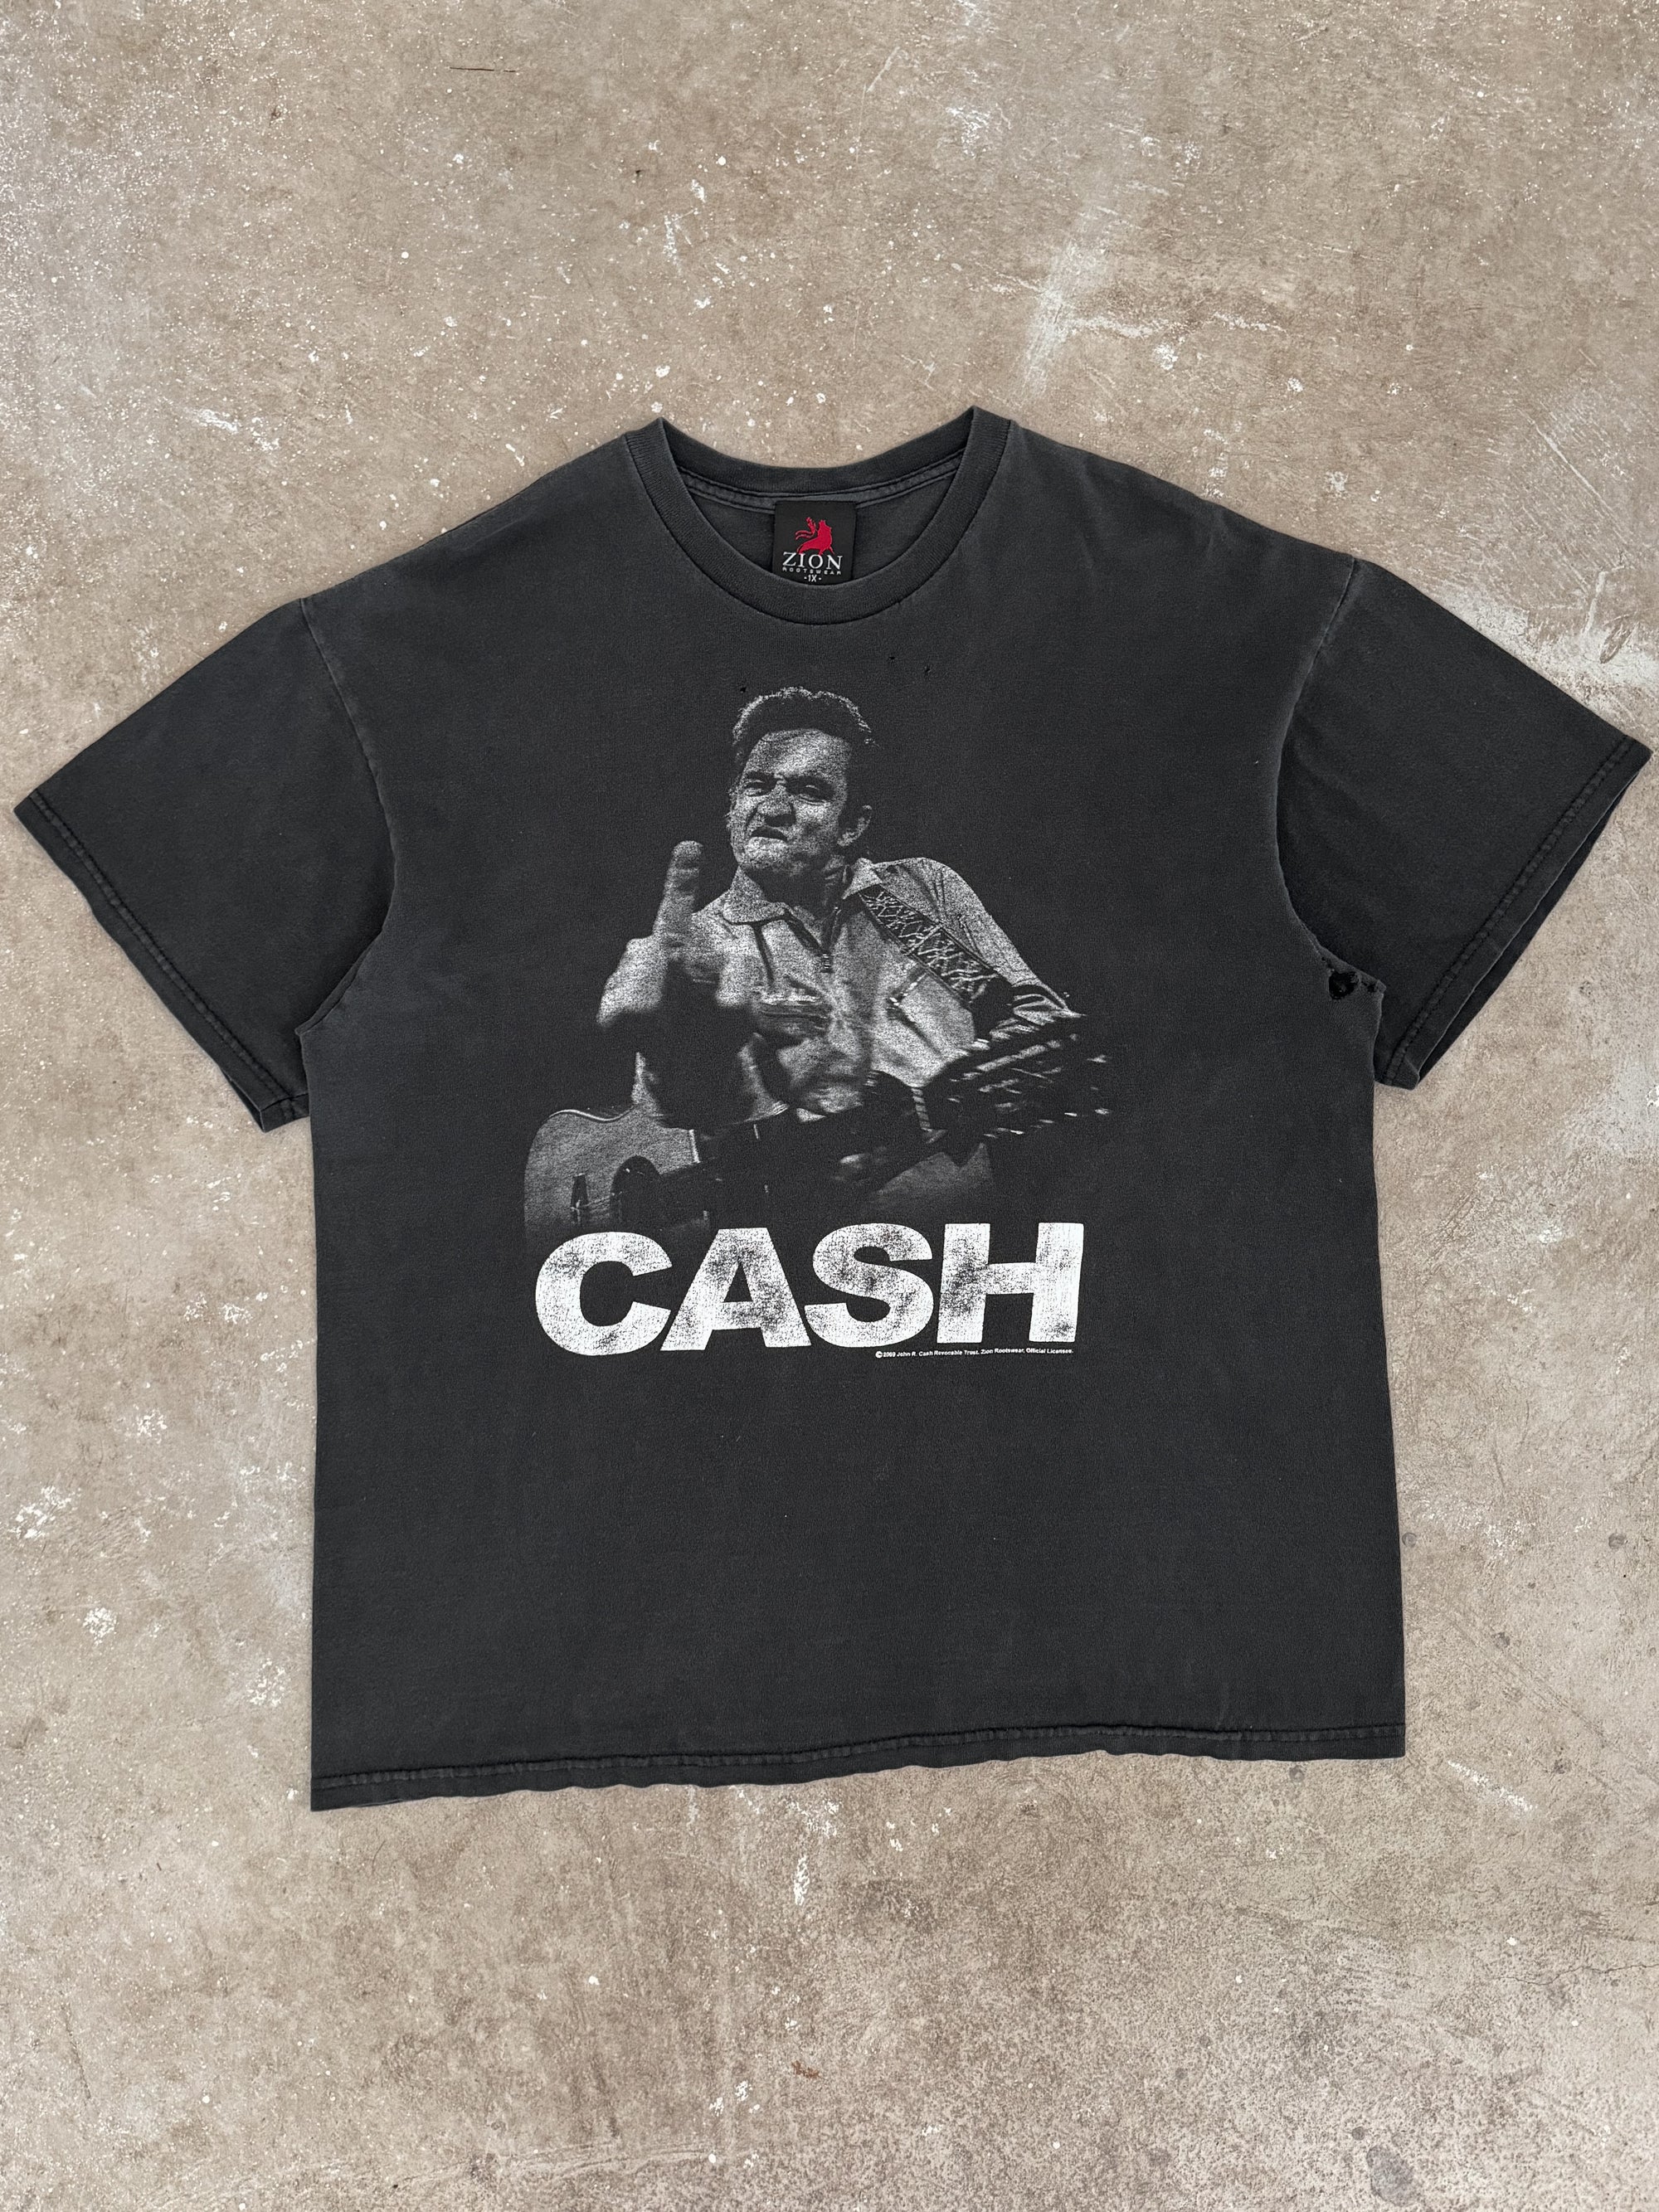 2000s "Johnny Cash" Tee (L/XL)